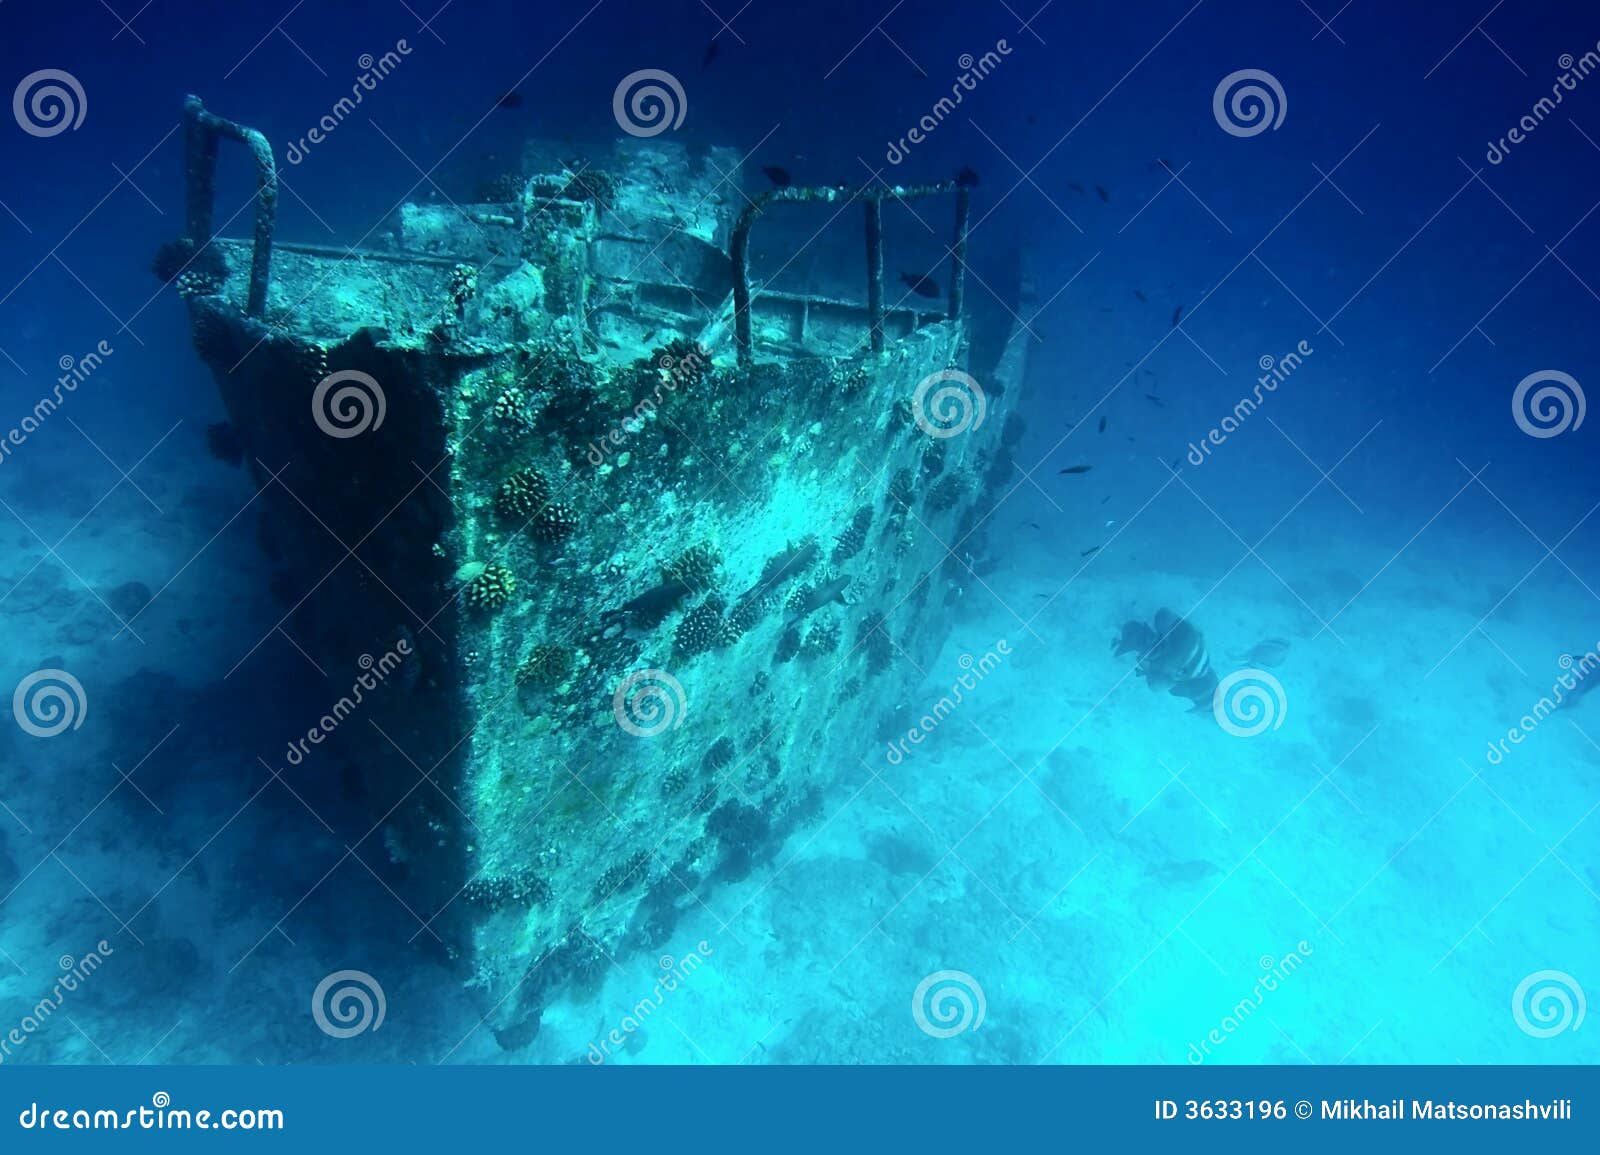 sunken ship